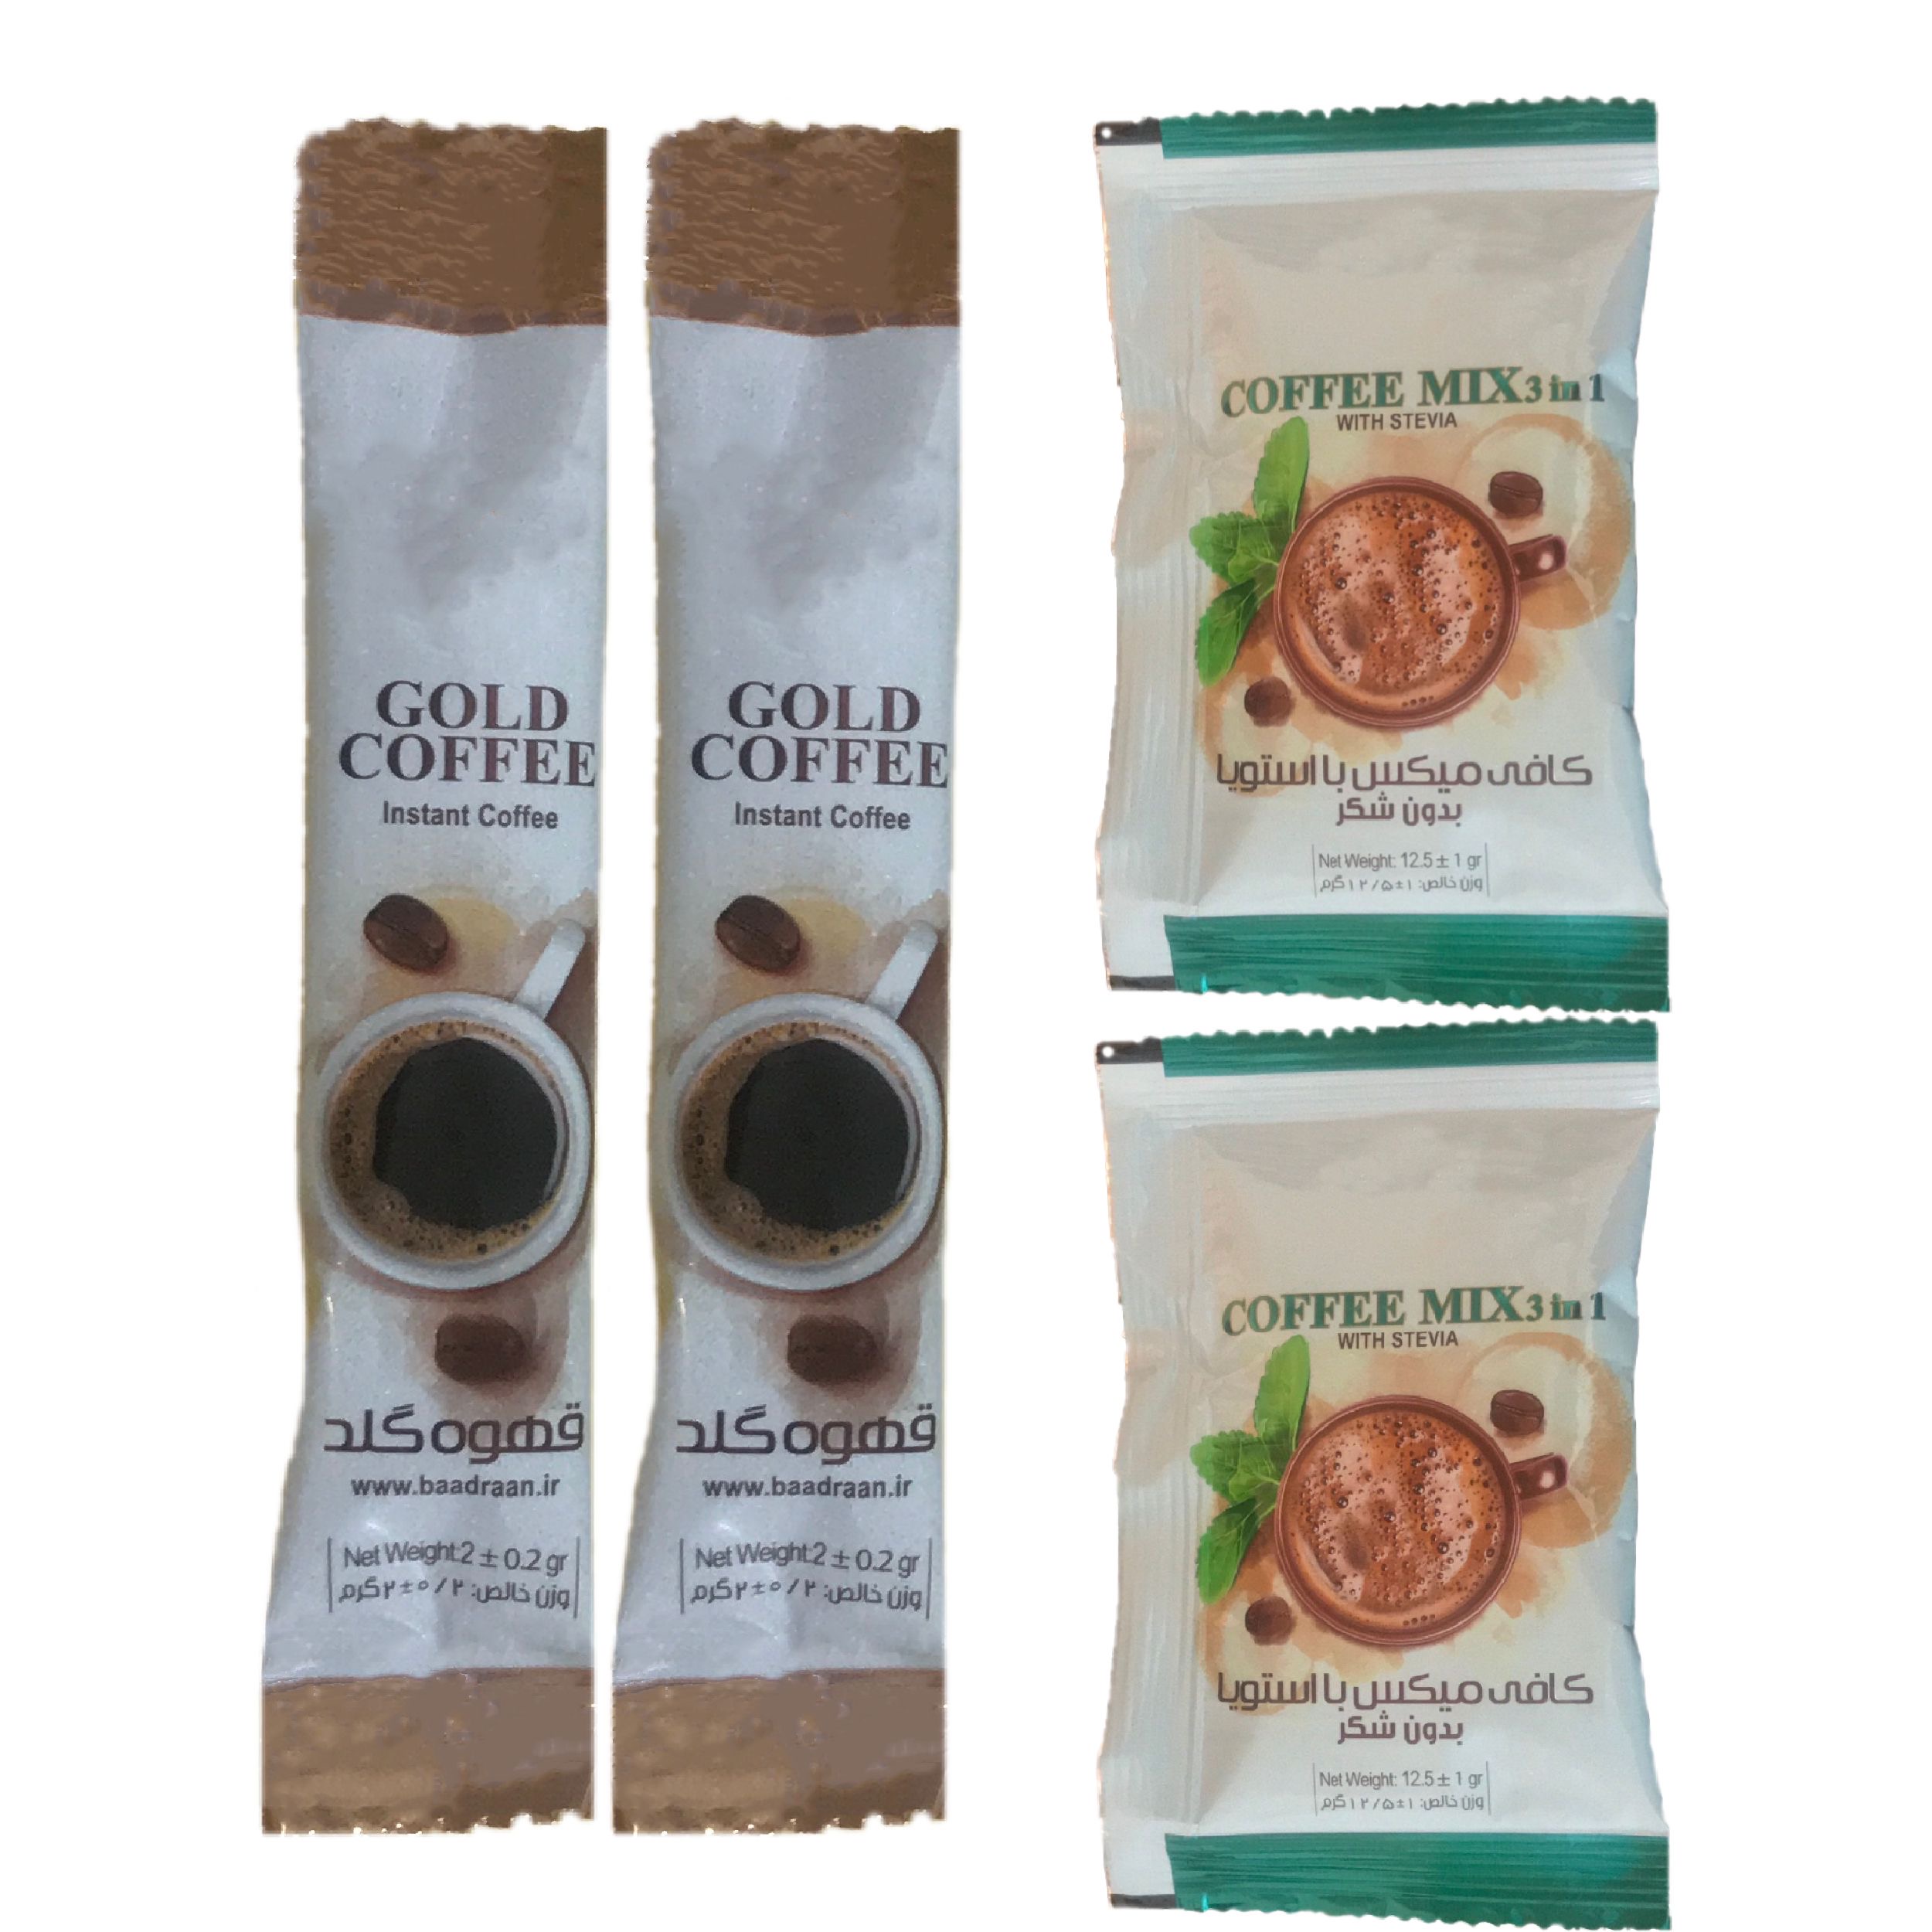 پودر قهوه فوری گلد کافه بسته ٢ عددی به همراه کافی میکس بدون شکر استویا بسته 2 عددی